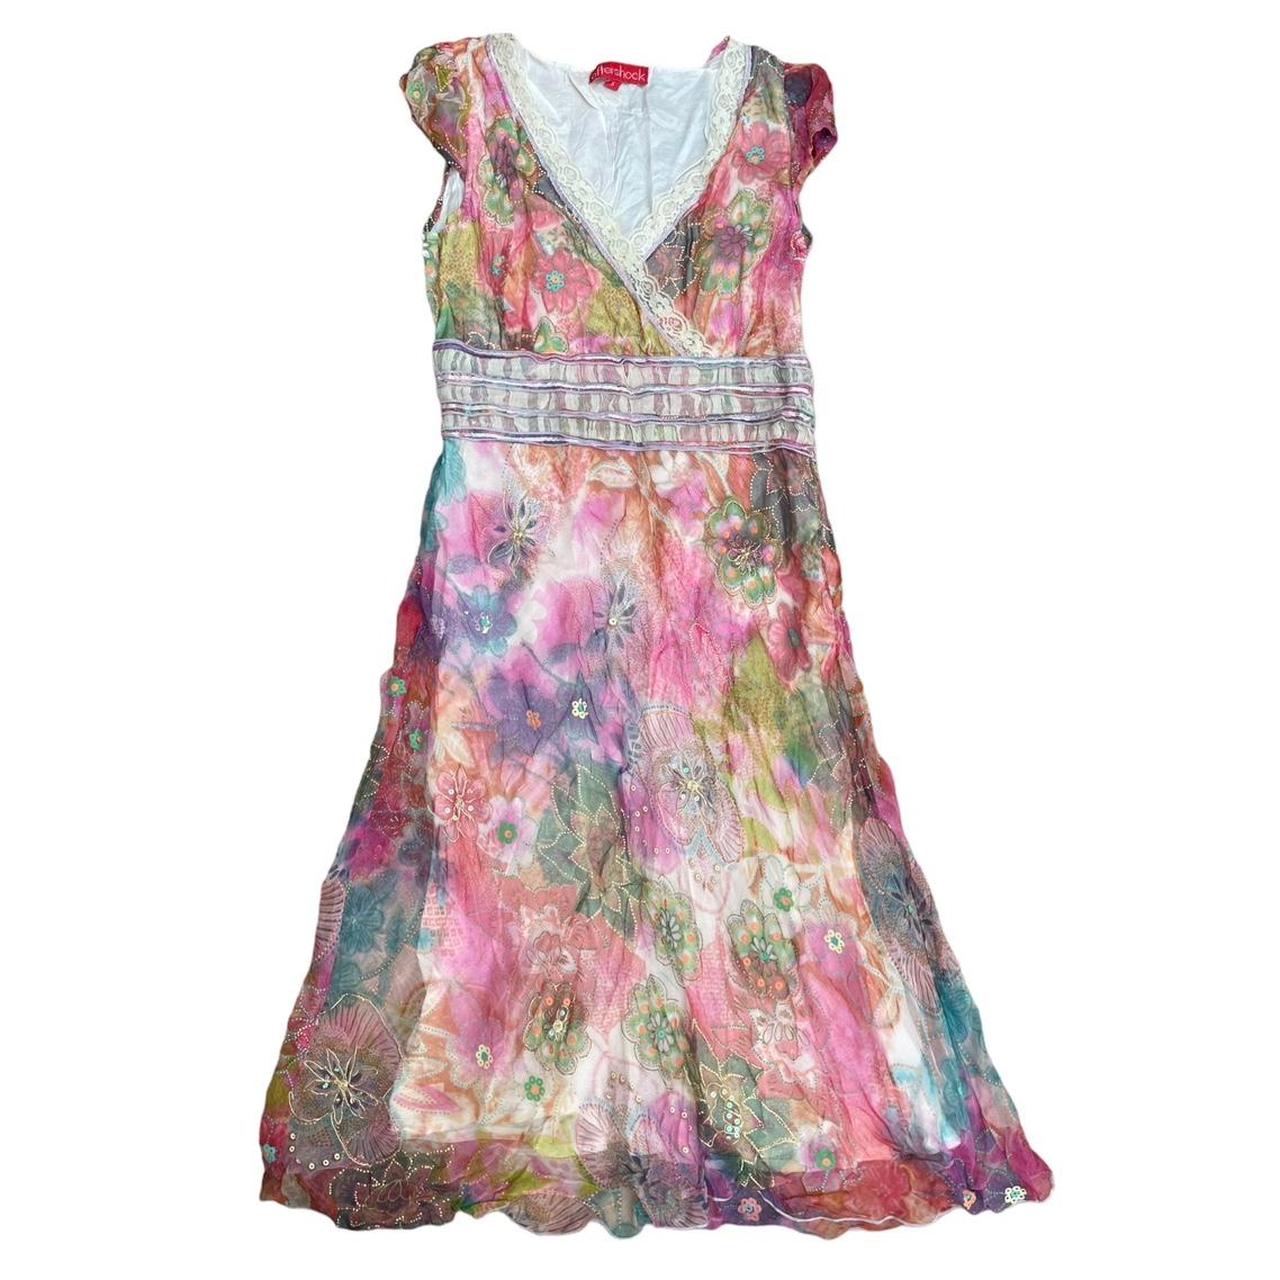 Mesh dress The ultimate fairy dress! Beautiful mesh... - Depop